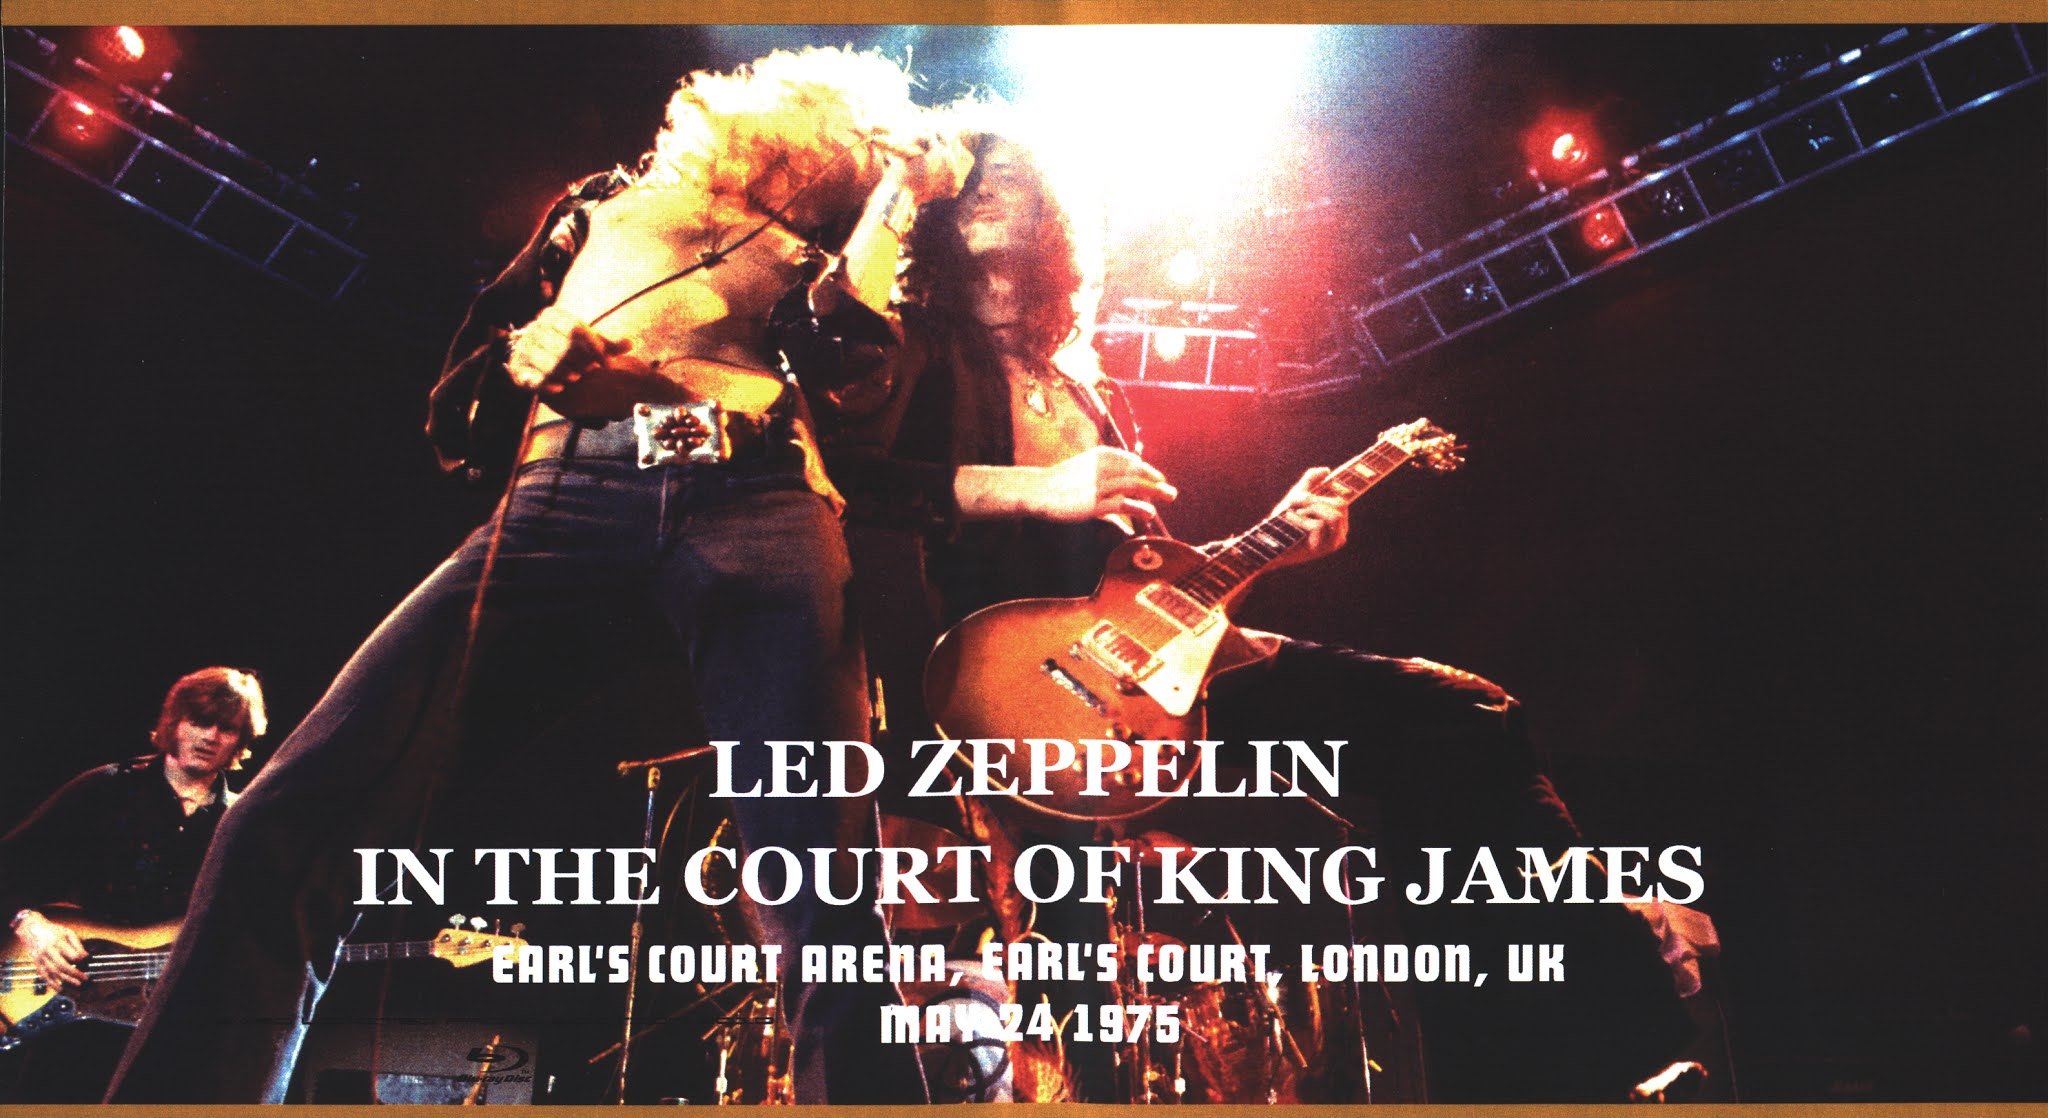 Long Live Led Zeppelin